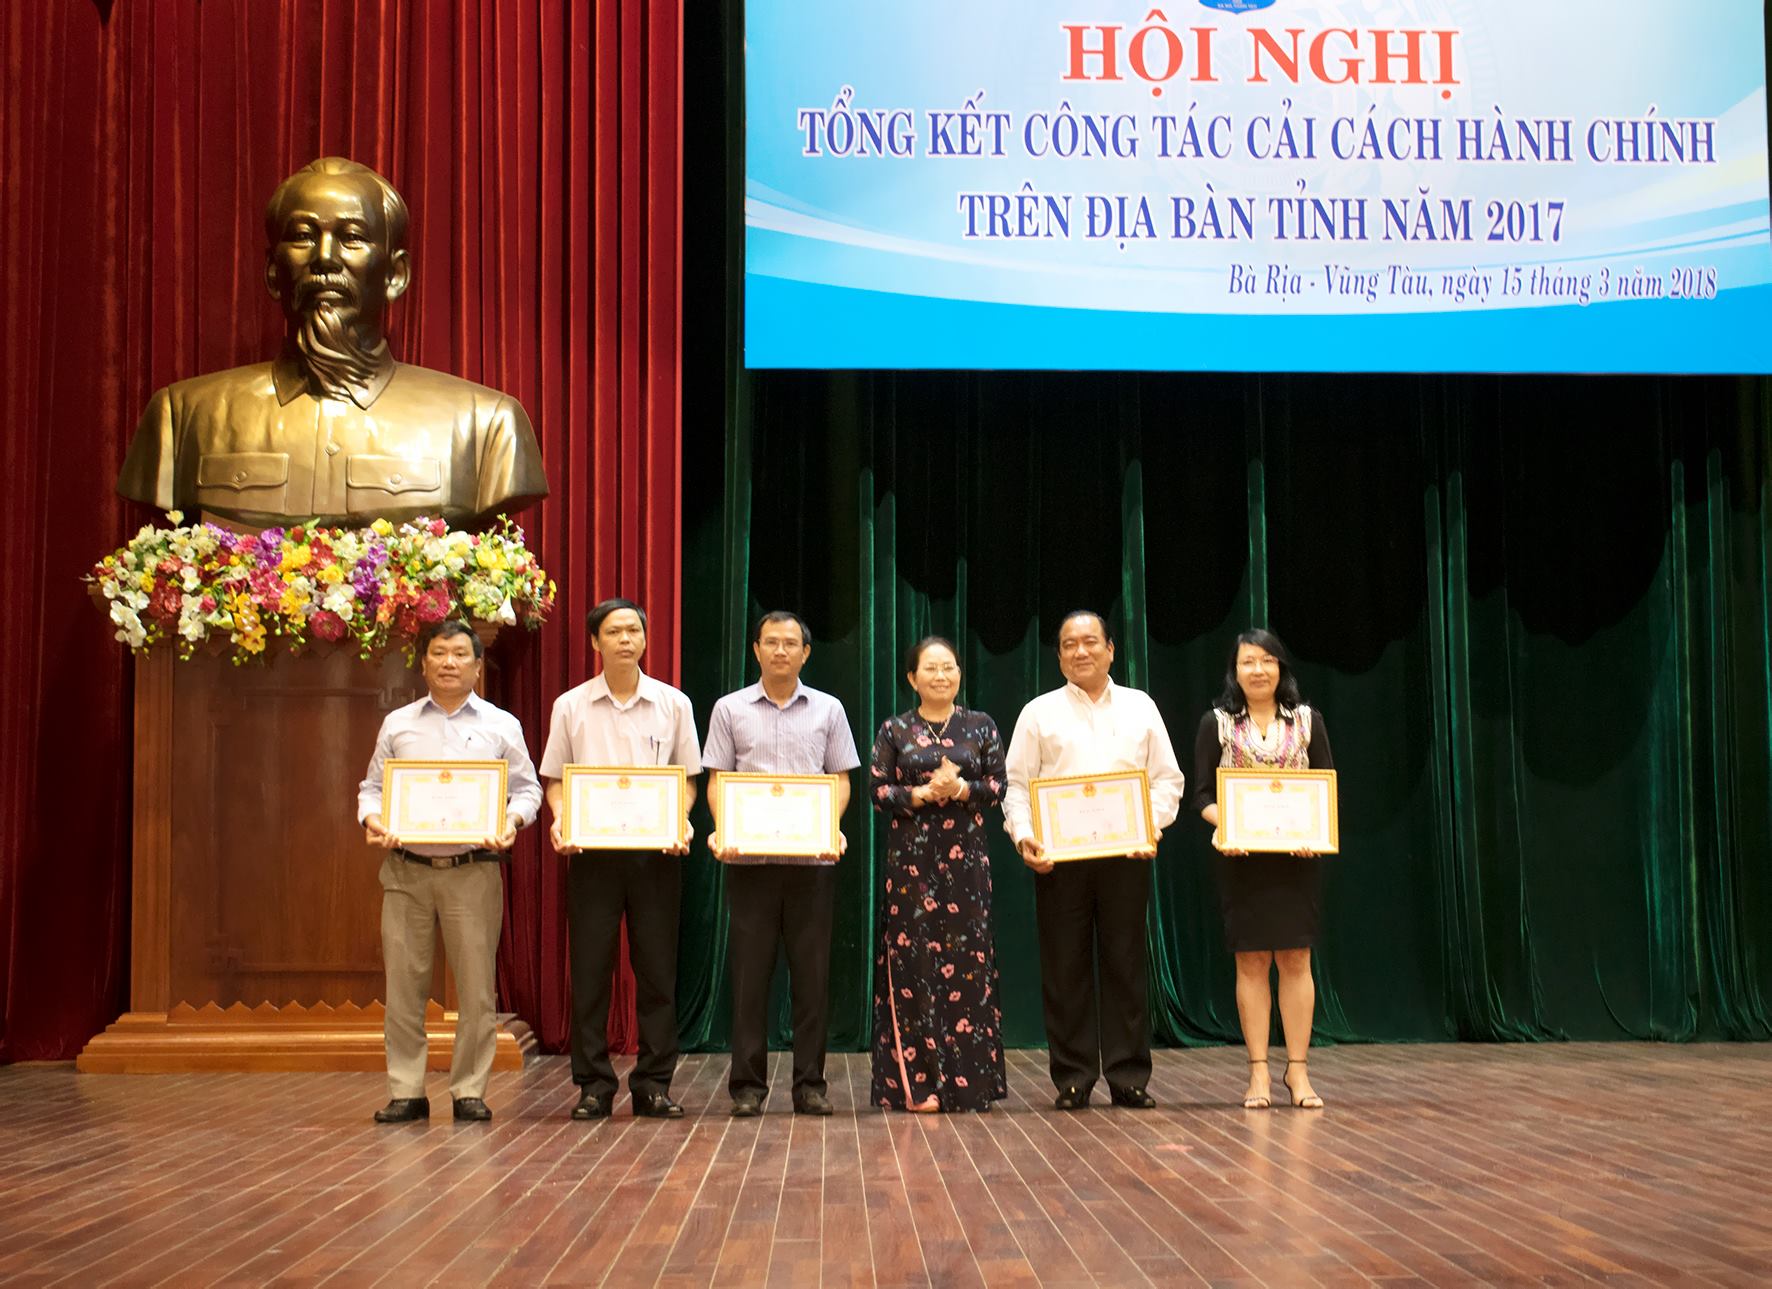 Ông Nguyễn Thanh Bình (bìa trái) nhận Bằng khen của UBND tỉnh vì có nhiều thành tích trong công tác CCHC năm 2017.